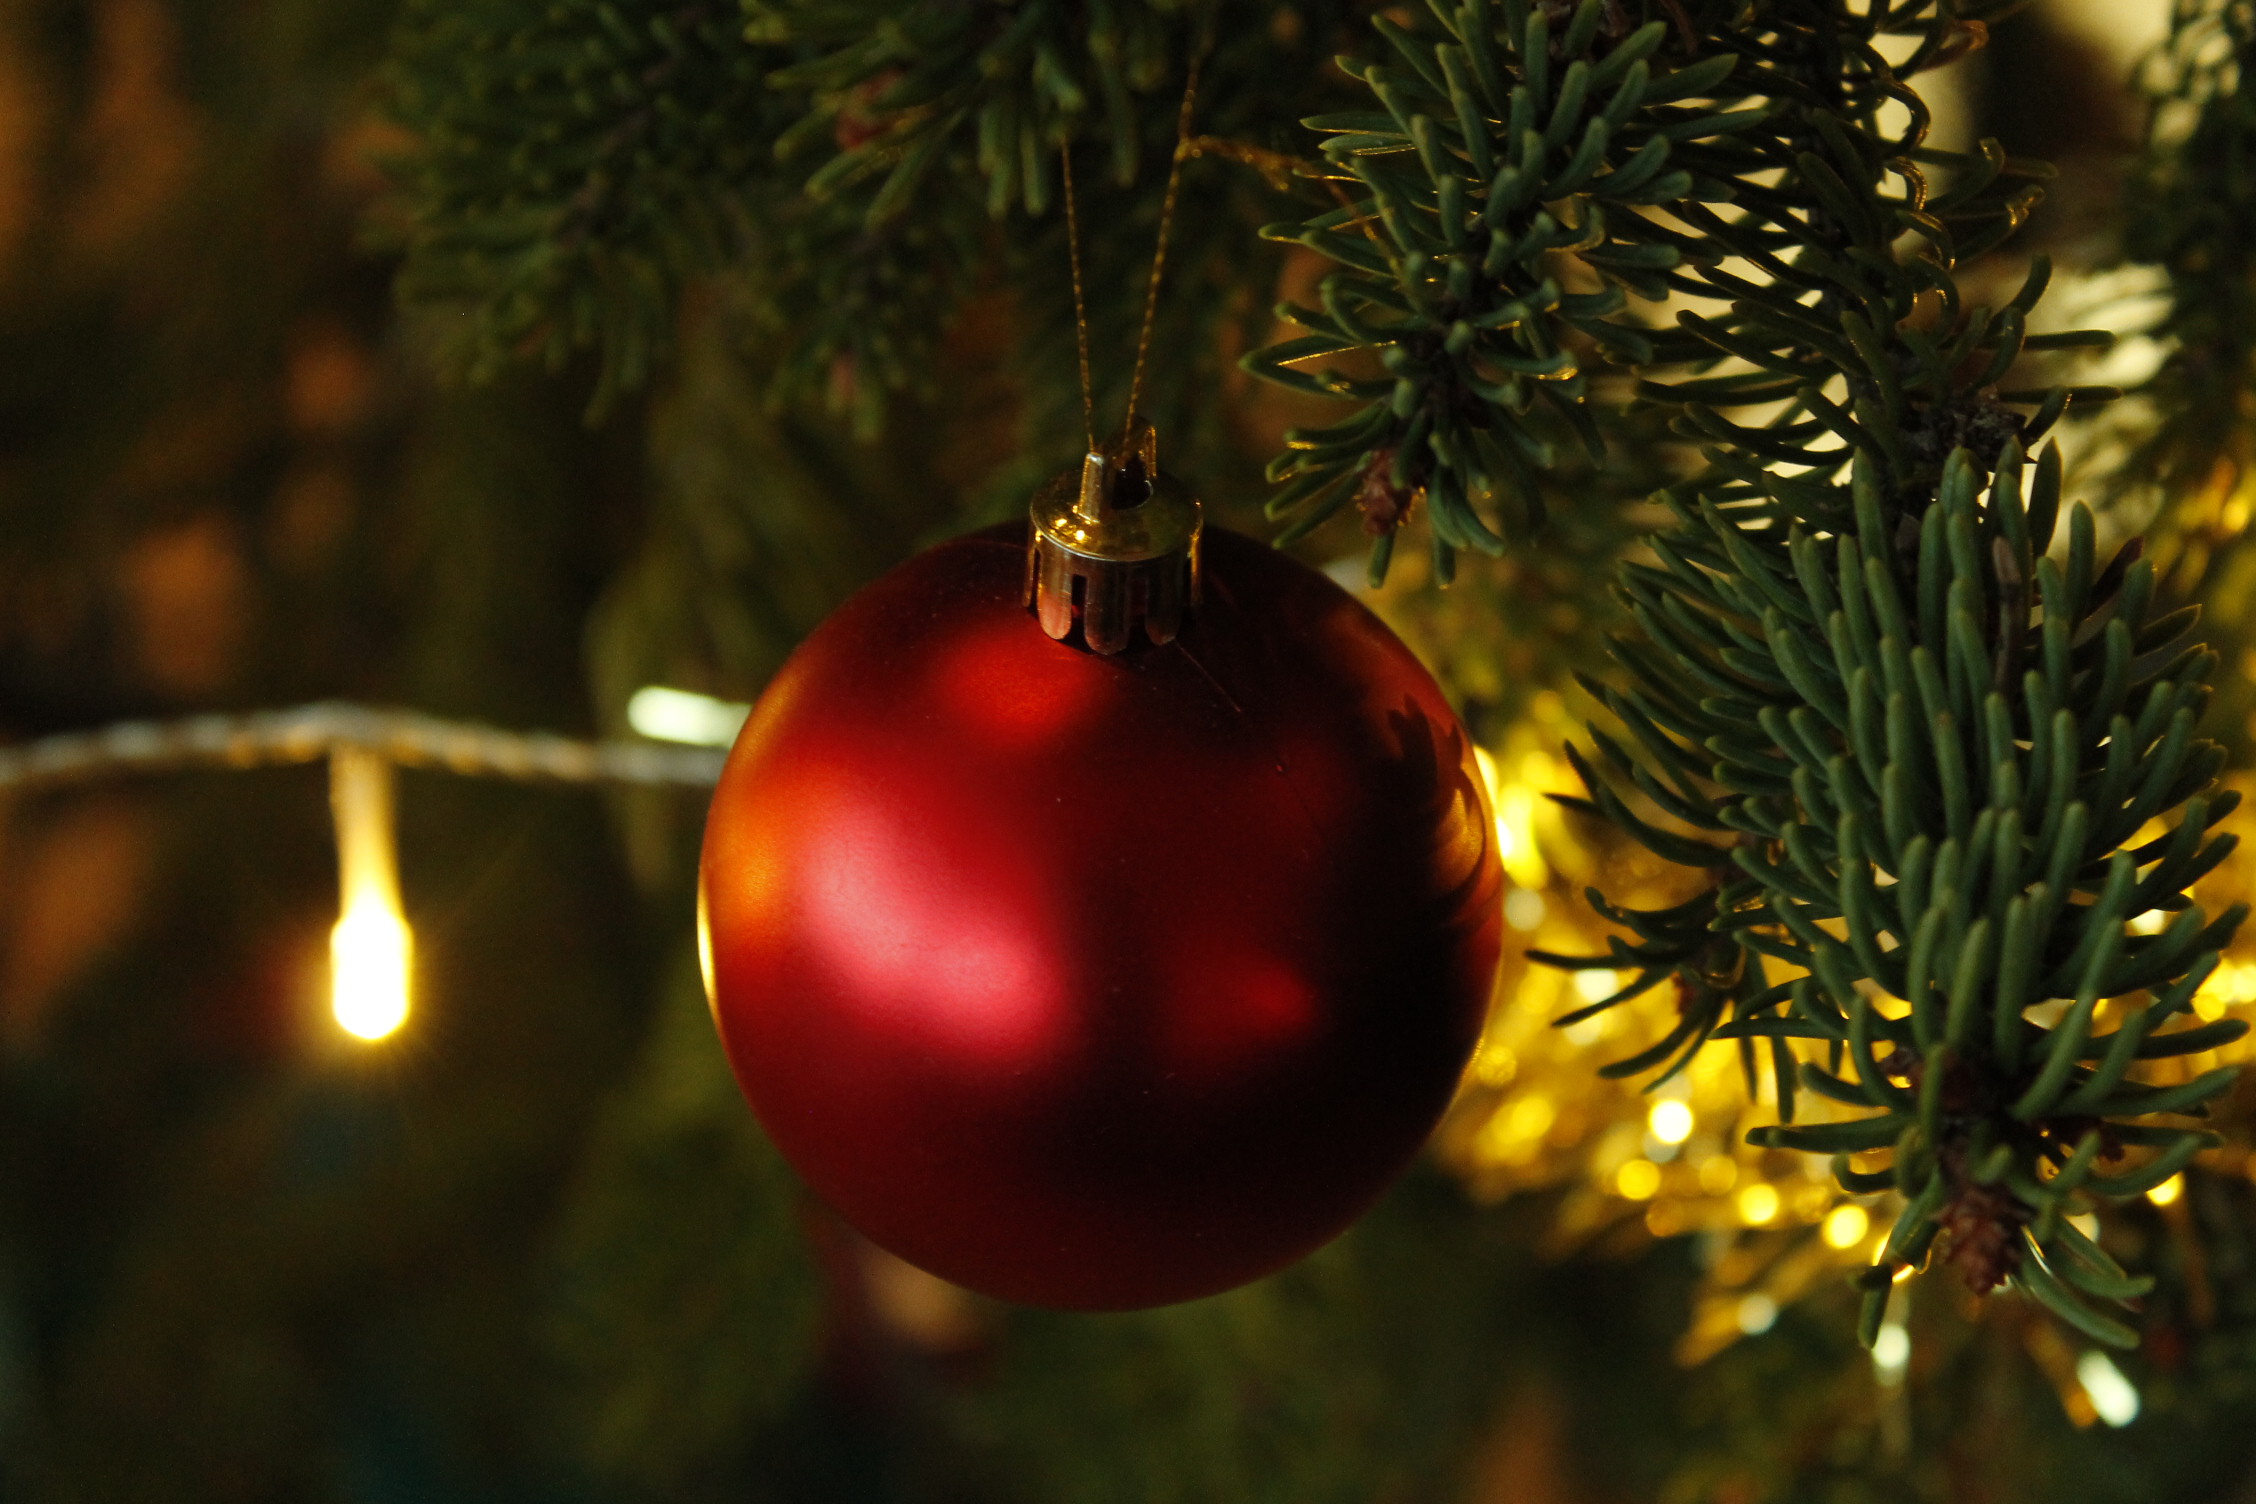 Juvan kunta toivottaa rauhallista joulua ja onnea vuodelle 2020!